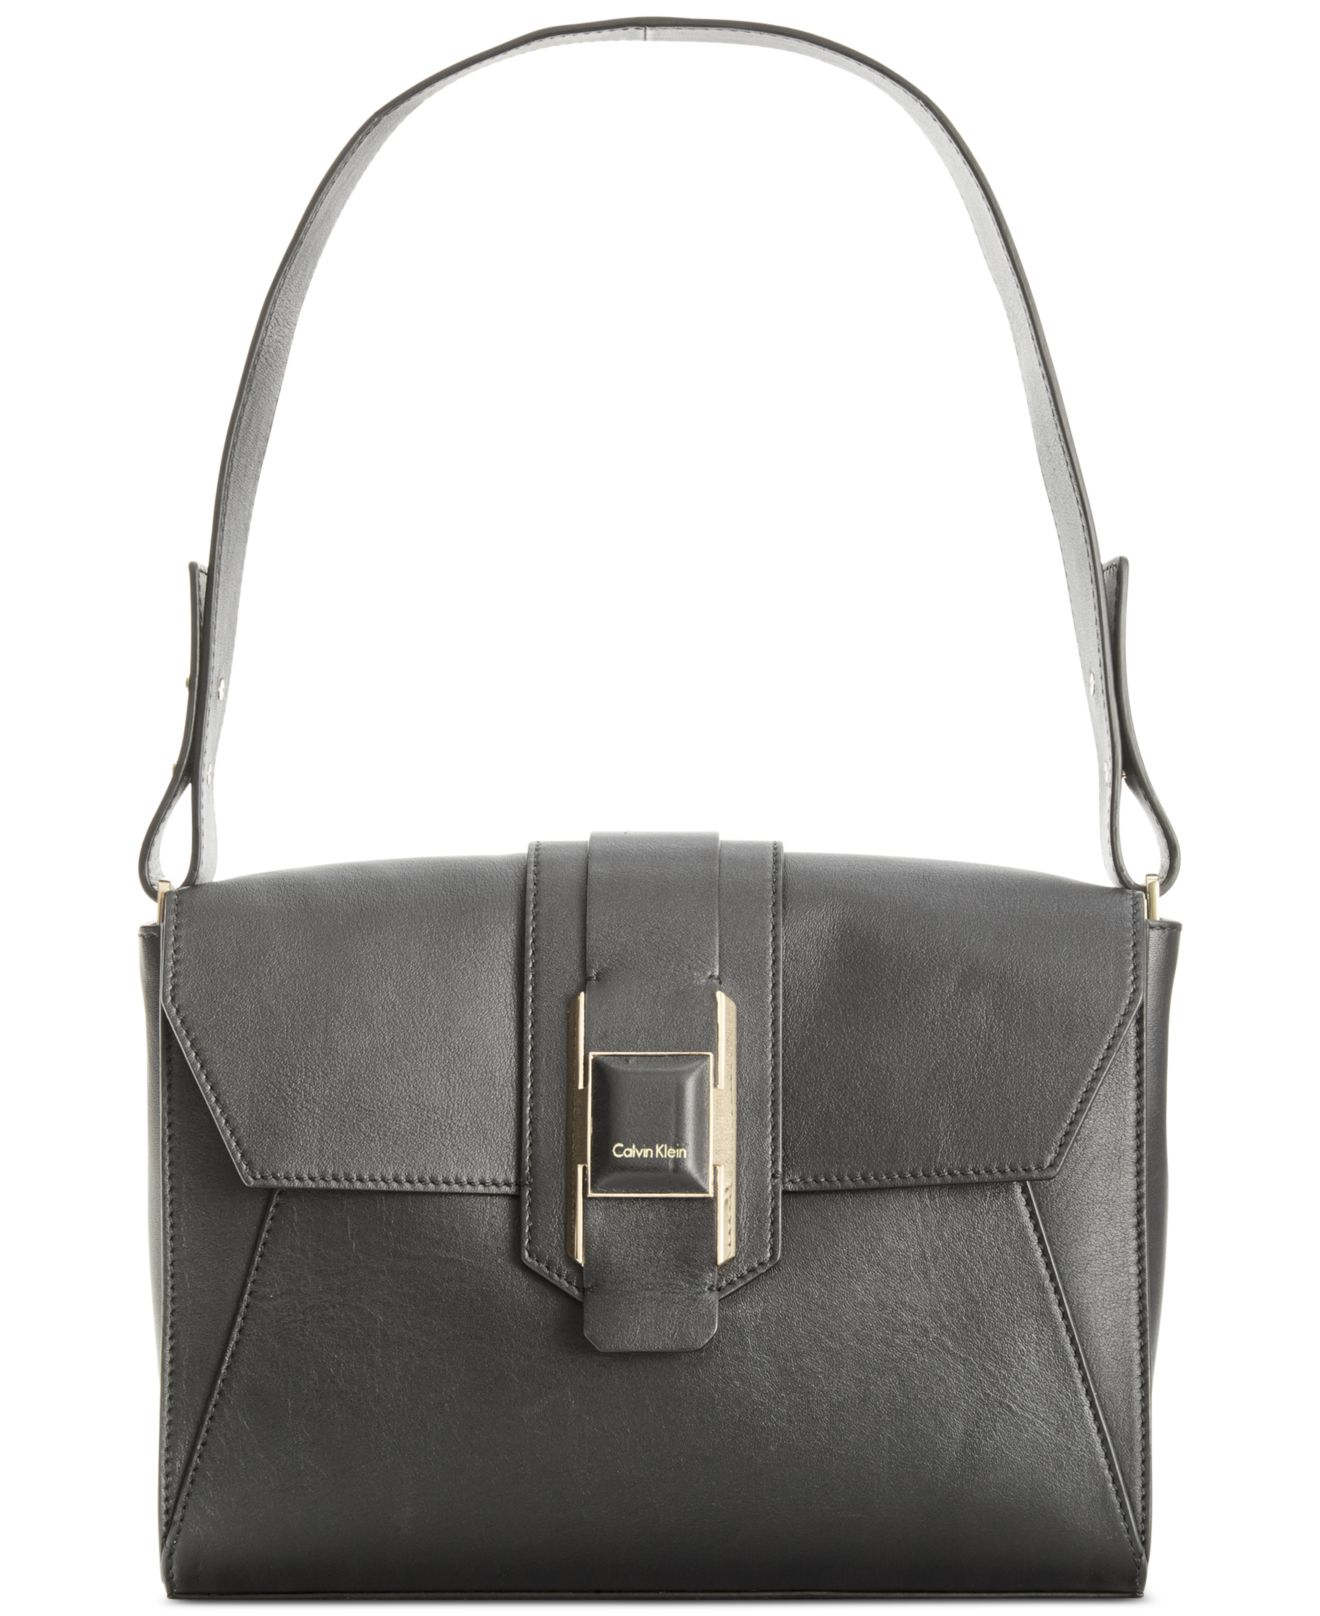 Lyst - Calvin Klein Smooth Leather Shoulder Bag in Black